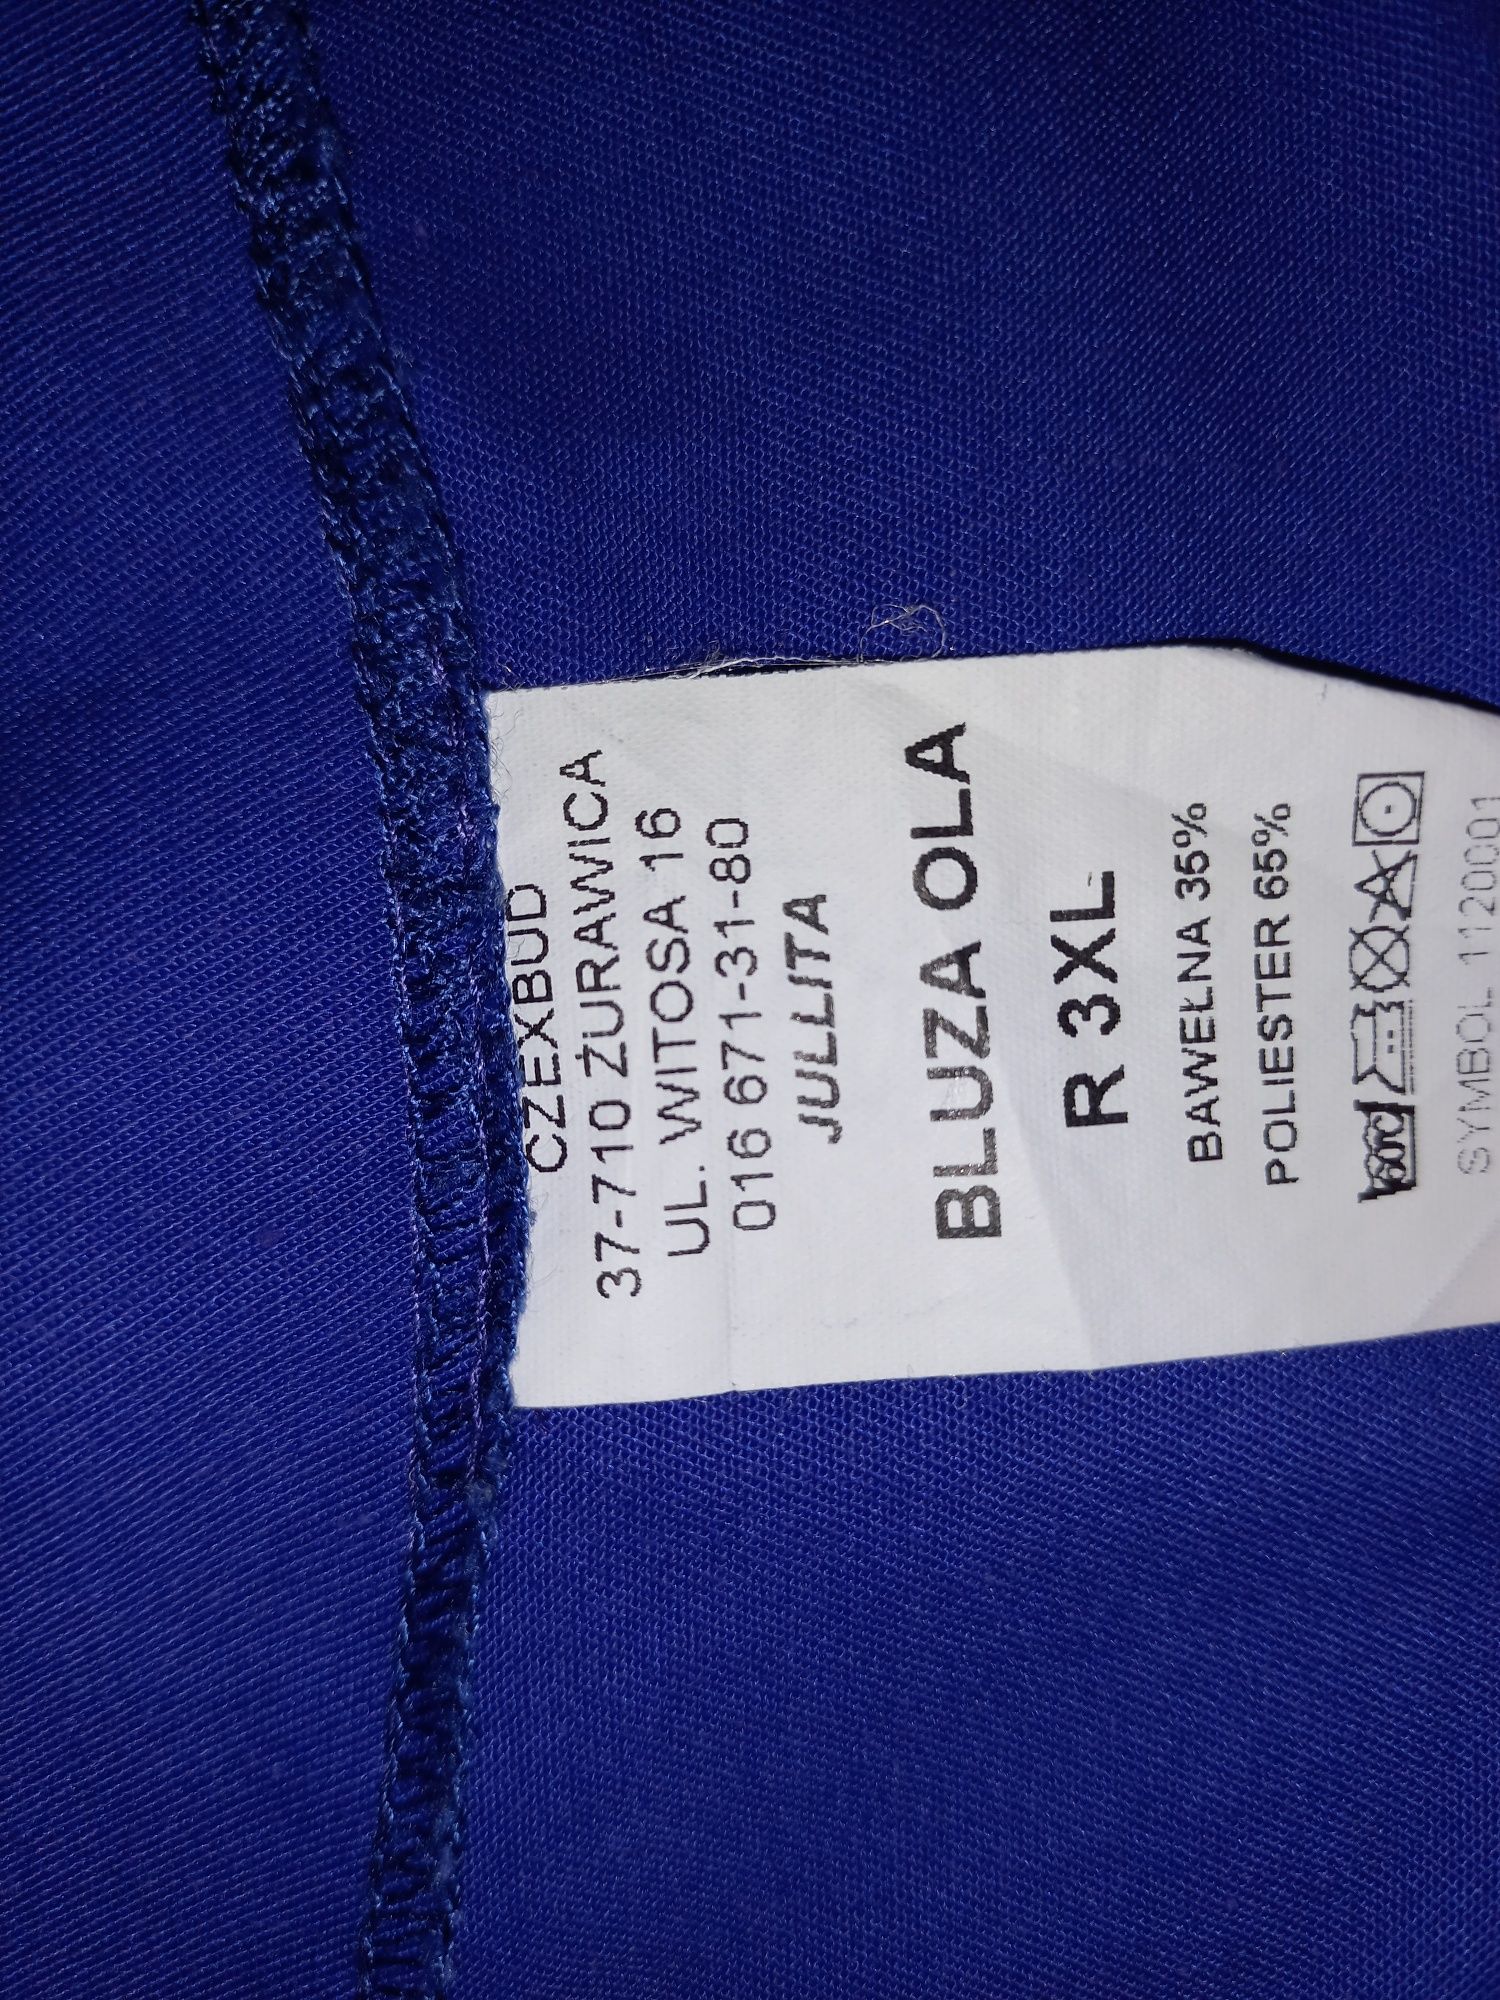 Niebieski mundurek damski | r. 46 (3XL) | Jullita - Bluza Ola